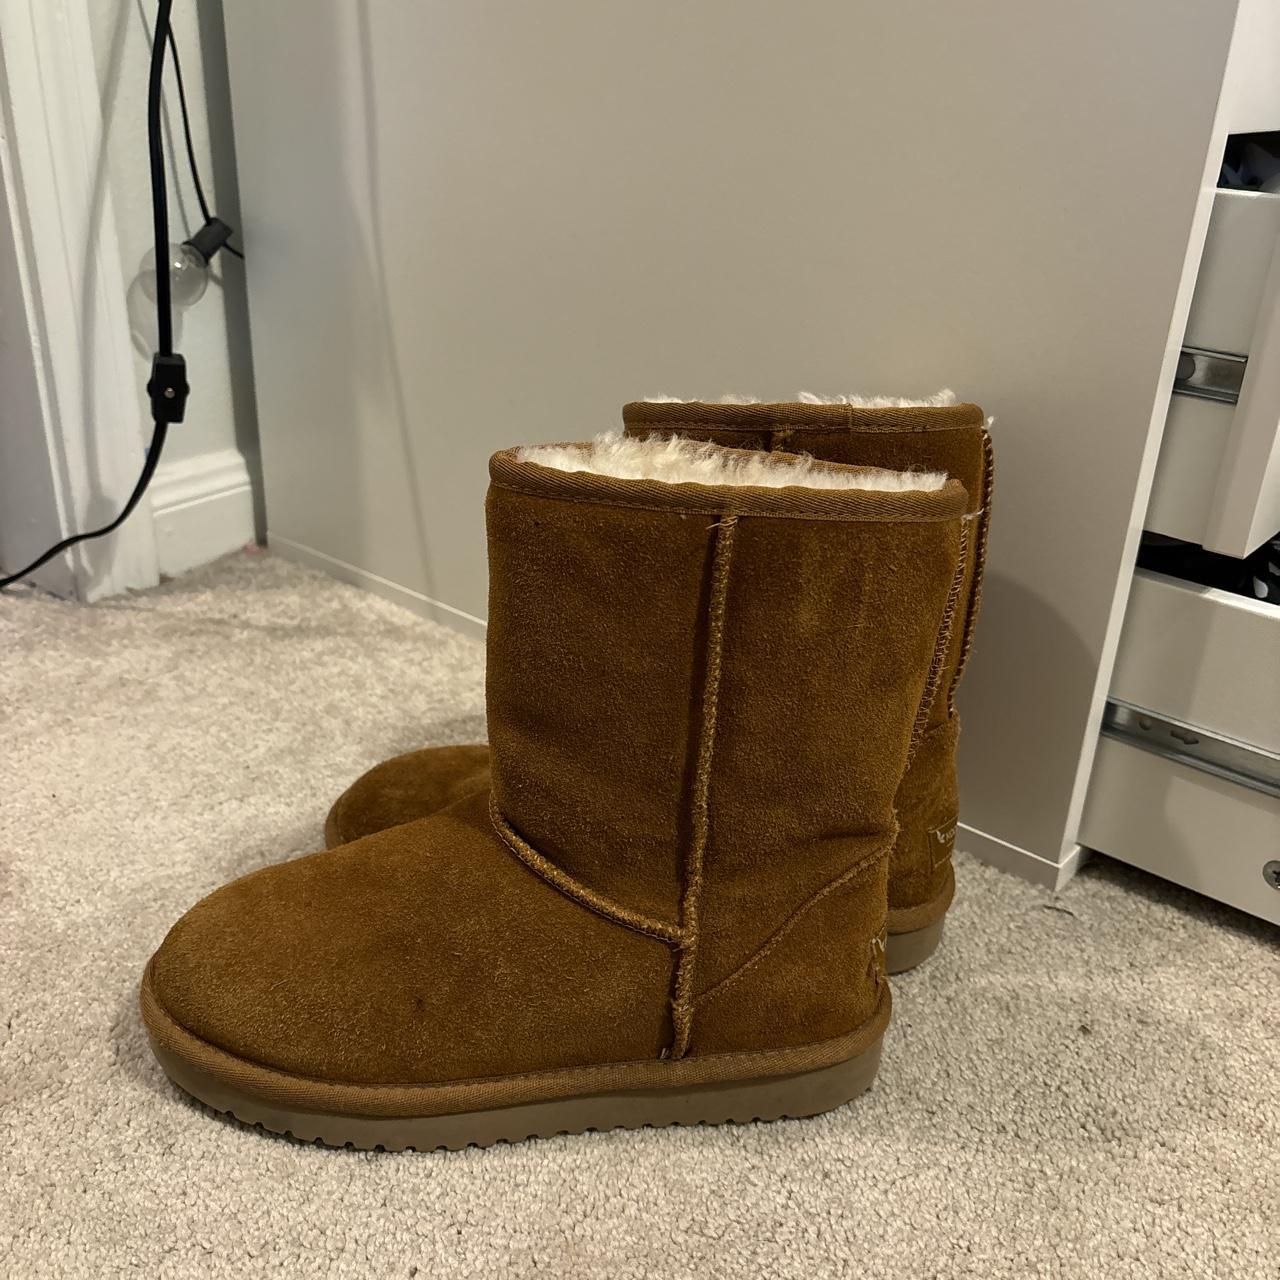 Ugg khaki brown color boots fluffy inside - Depop